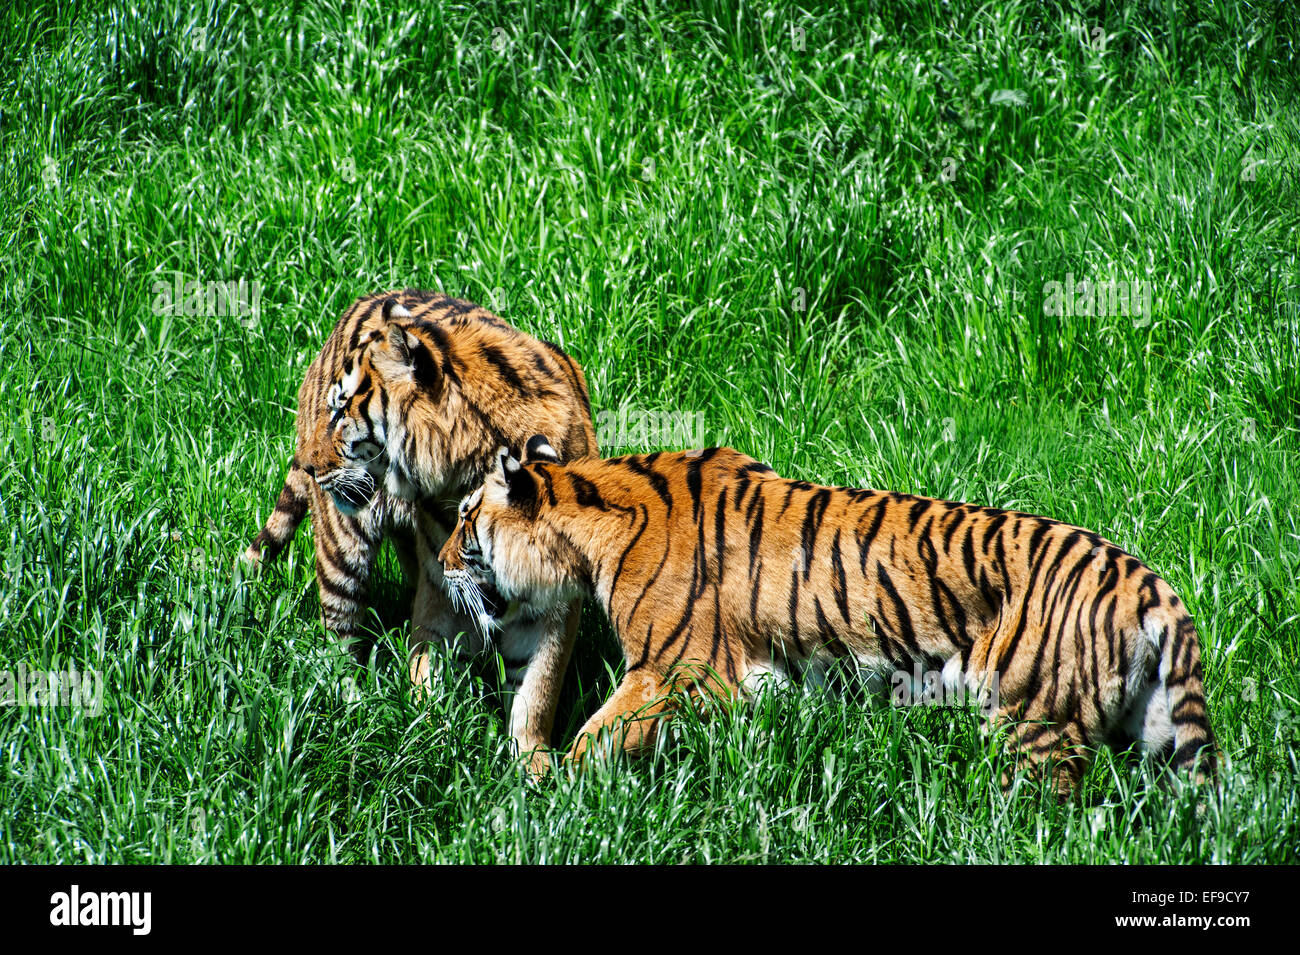 Zwei Bengal Tiger (Panthera Tigris Tigris) ursprünglich aus Indien, Bangladesch, Nepal und Bhutan beobachten Beute im Grünland Stockfoto